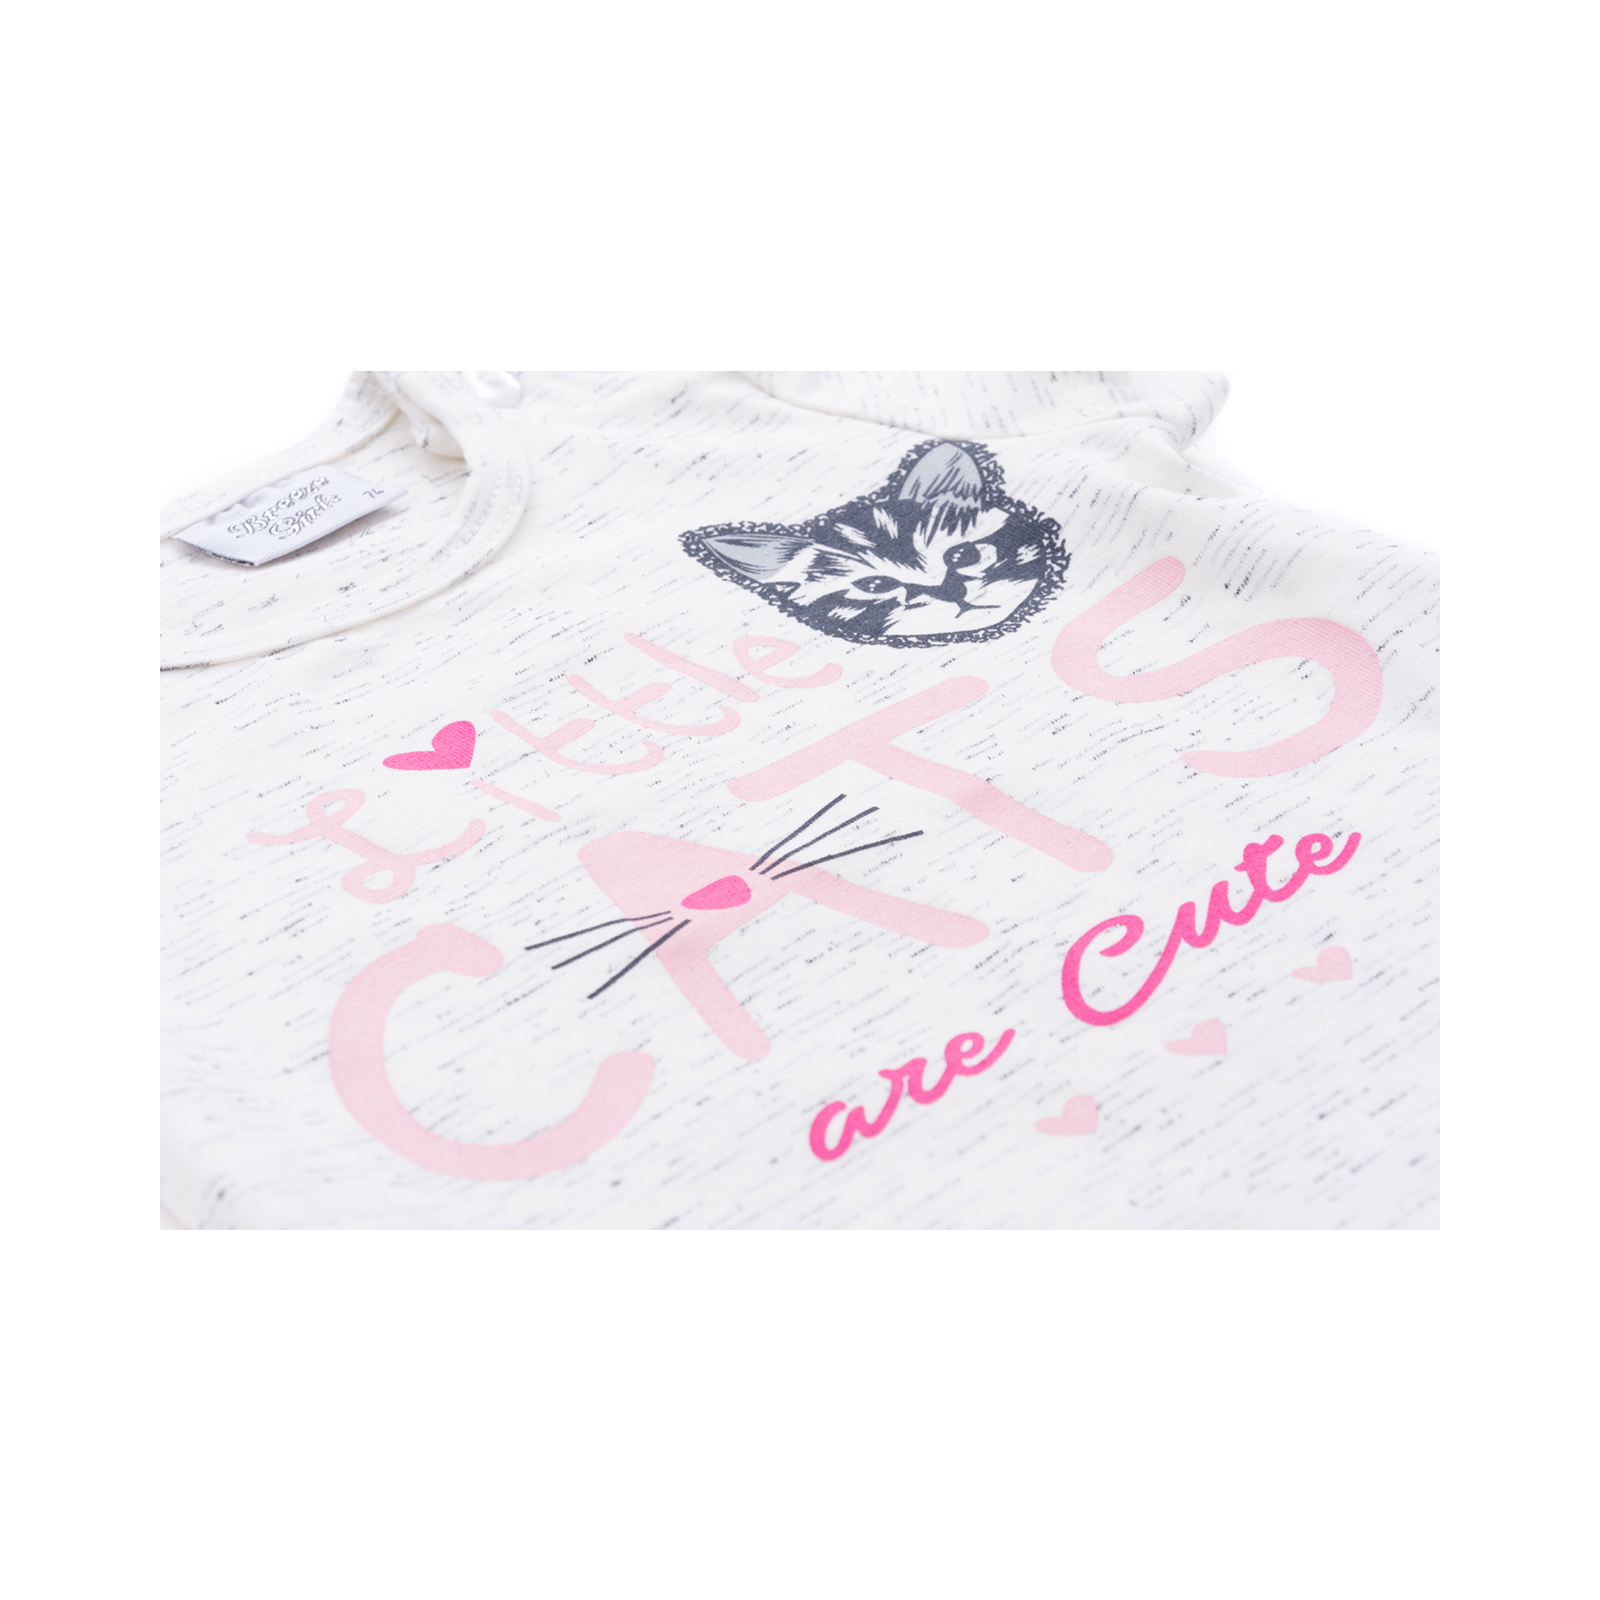 Набор детской одежды Breeze футболка с котиком и штанишки с кармашками (8983-92G-peach) изображение 6